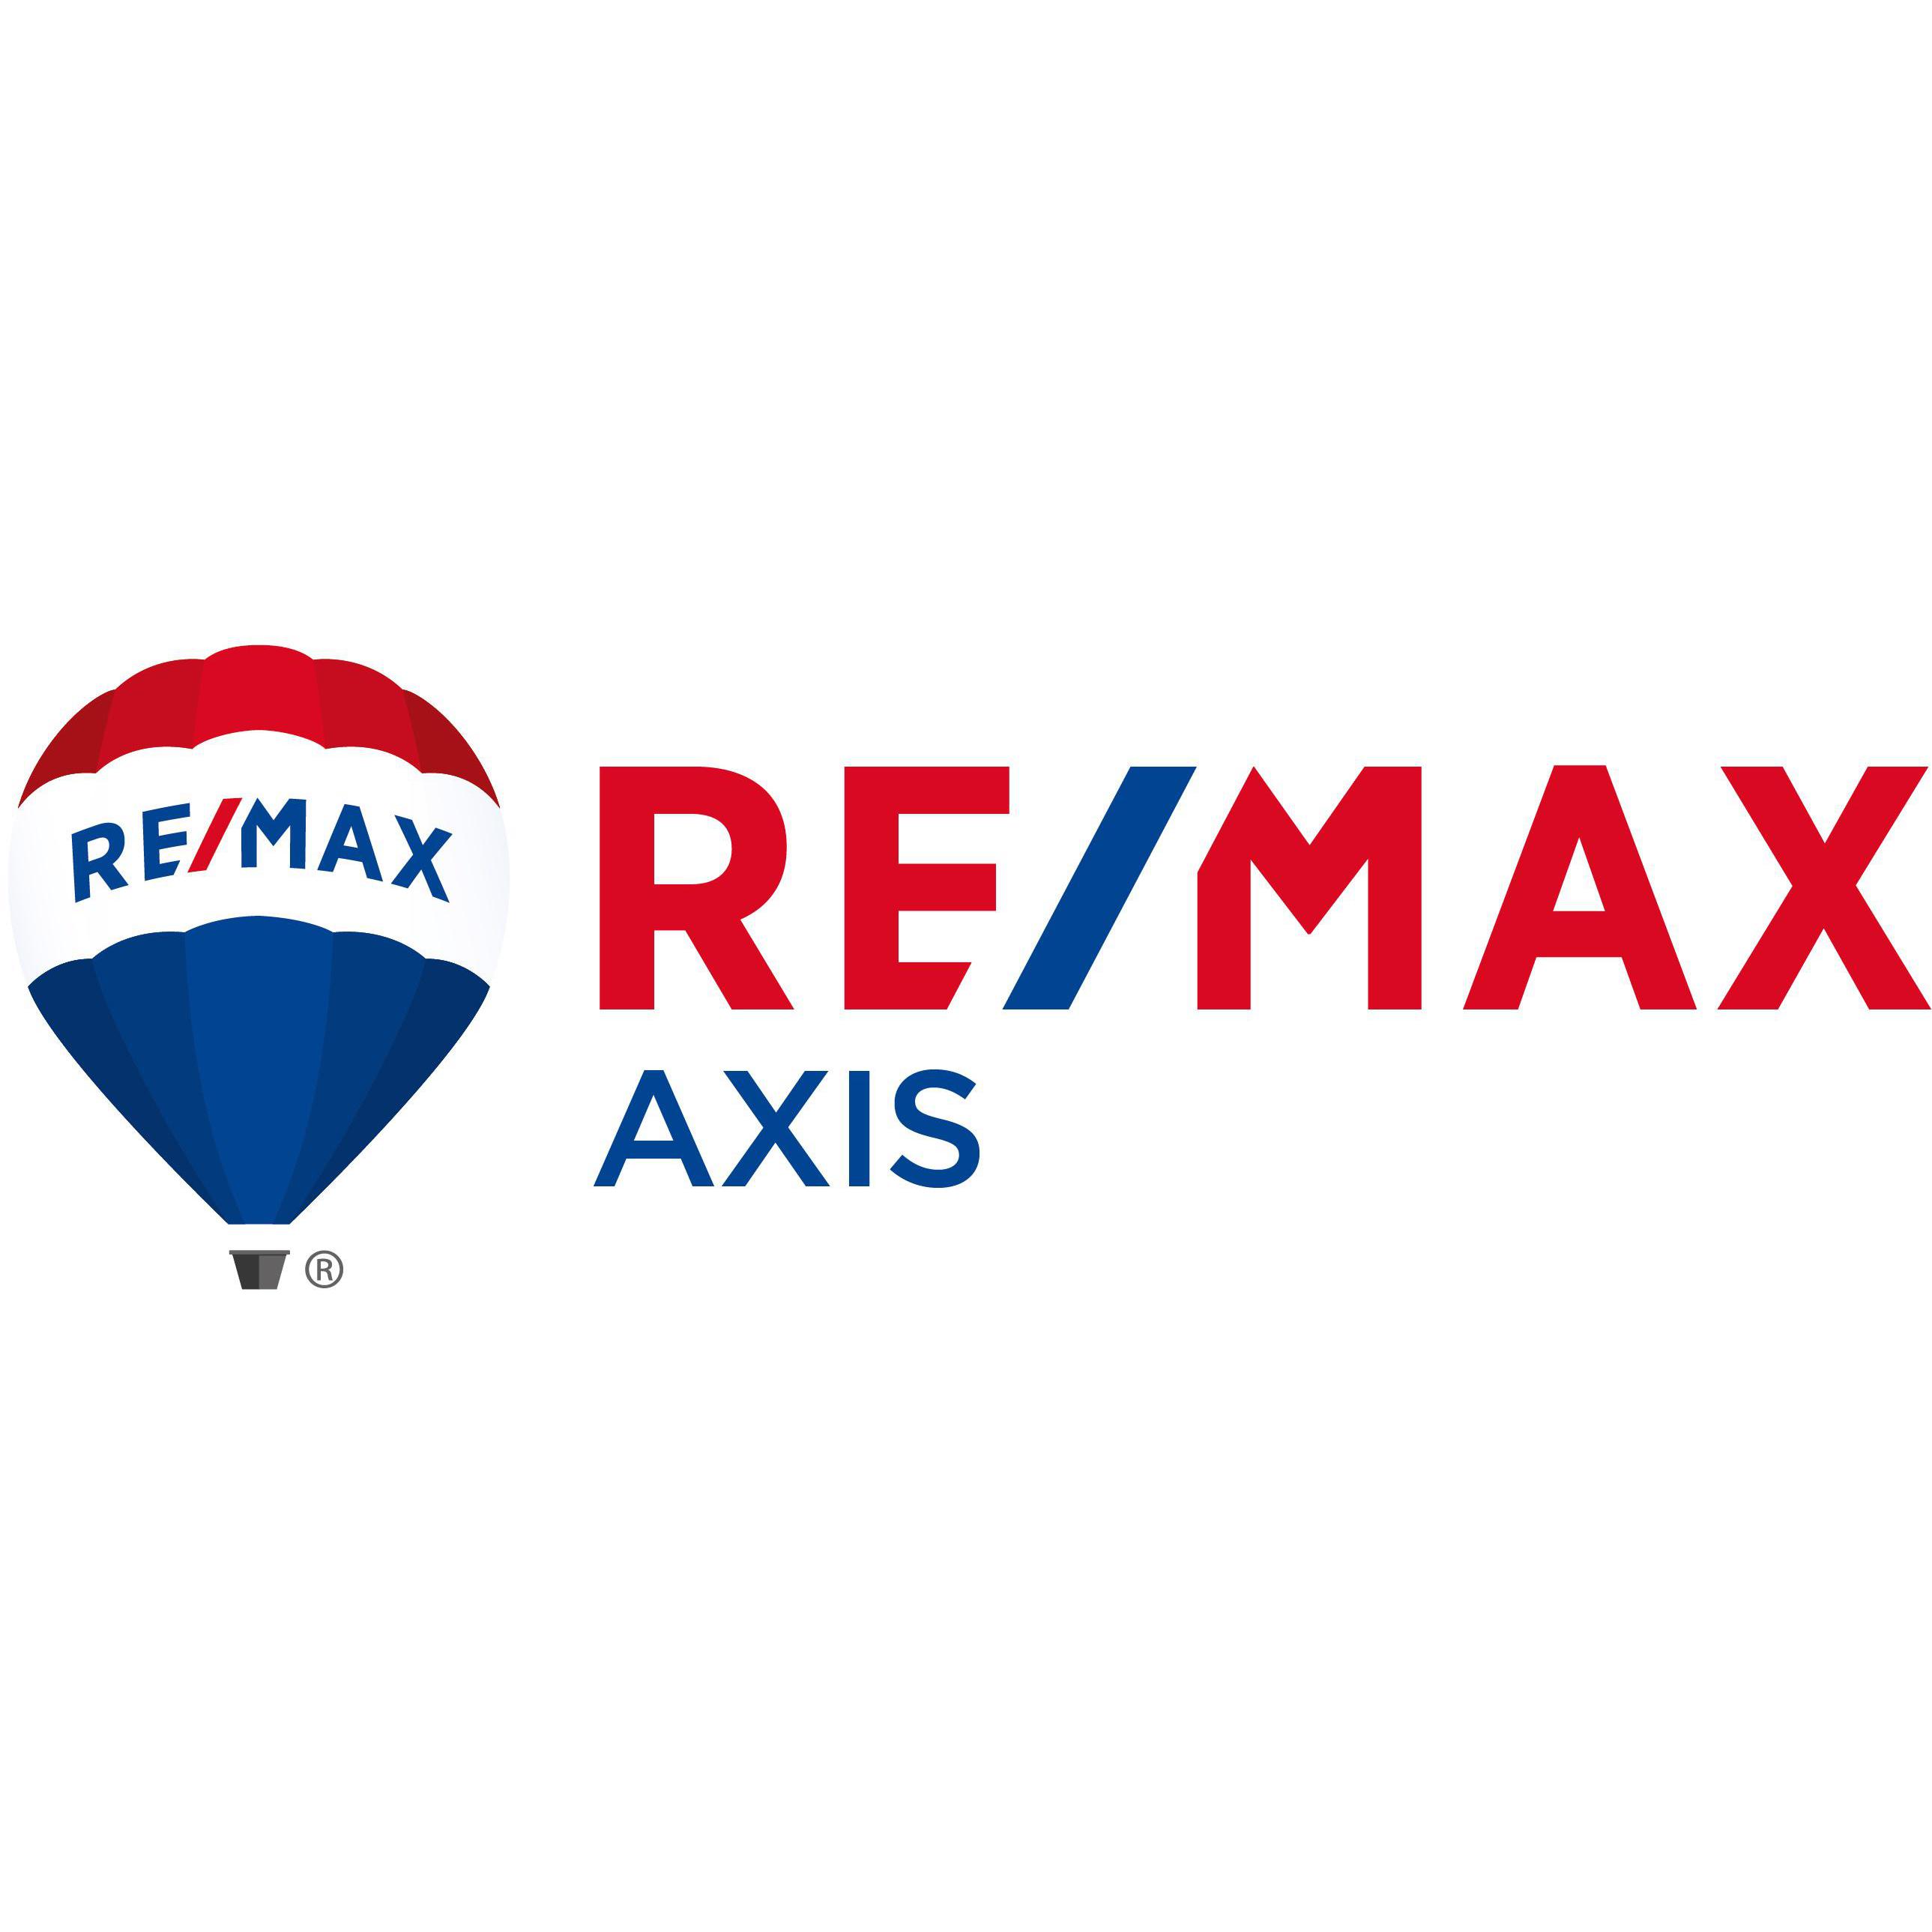 RE/MAX Axis Siete Palmas Las Palmas de Gran Canaria